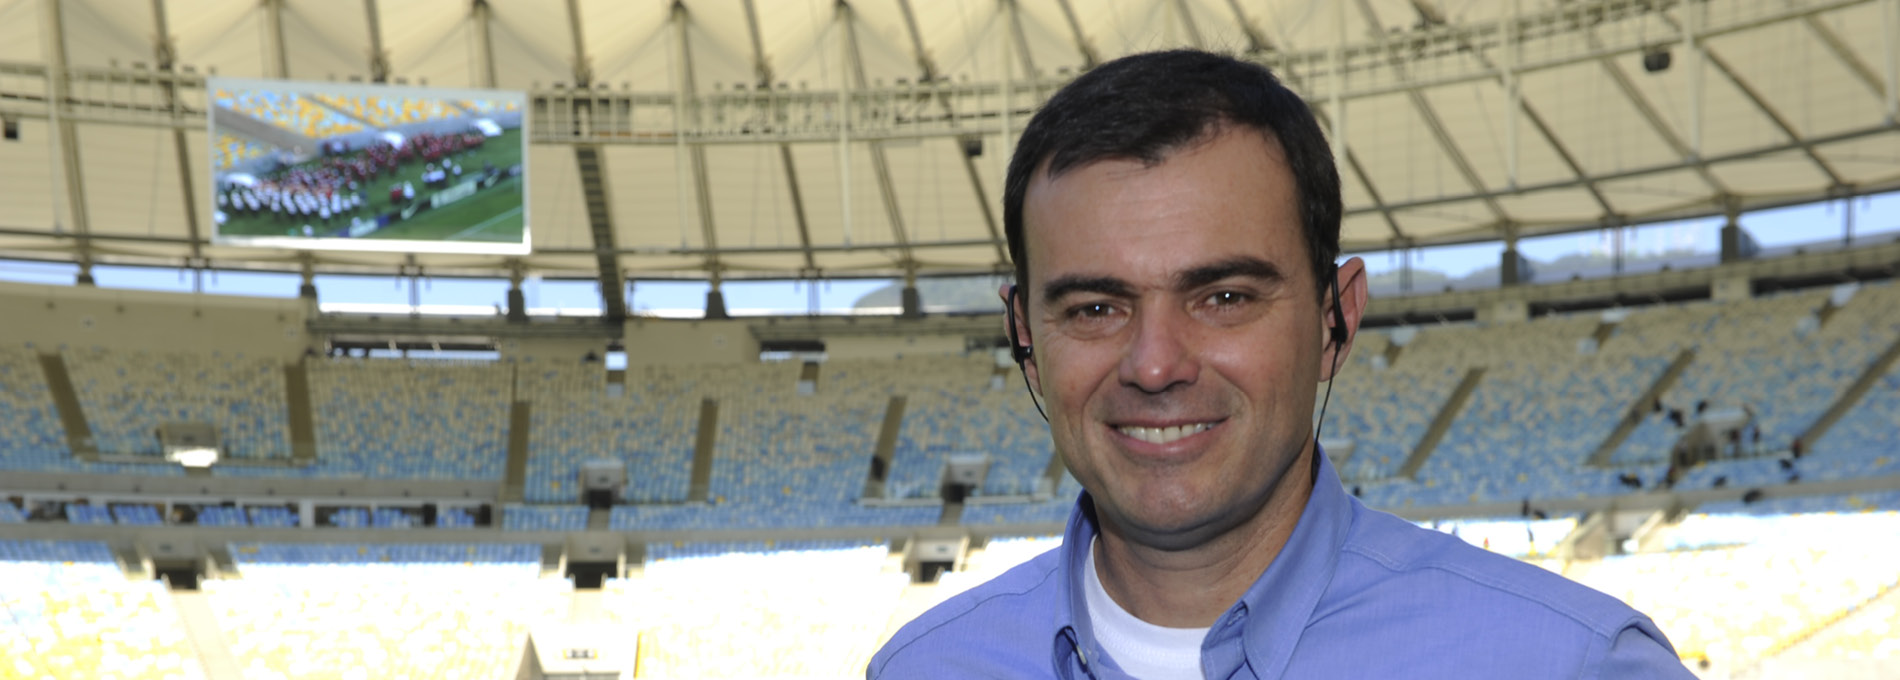 Tino Marcos, jornalista esportivo da Rede Globo, dentro de um estádio de futebol